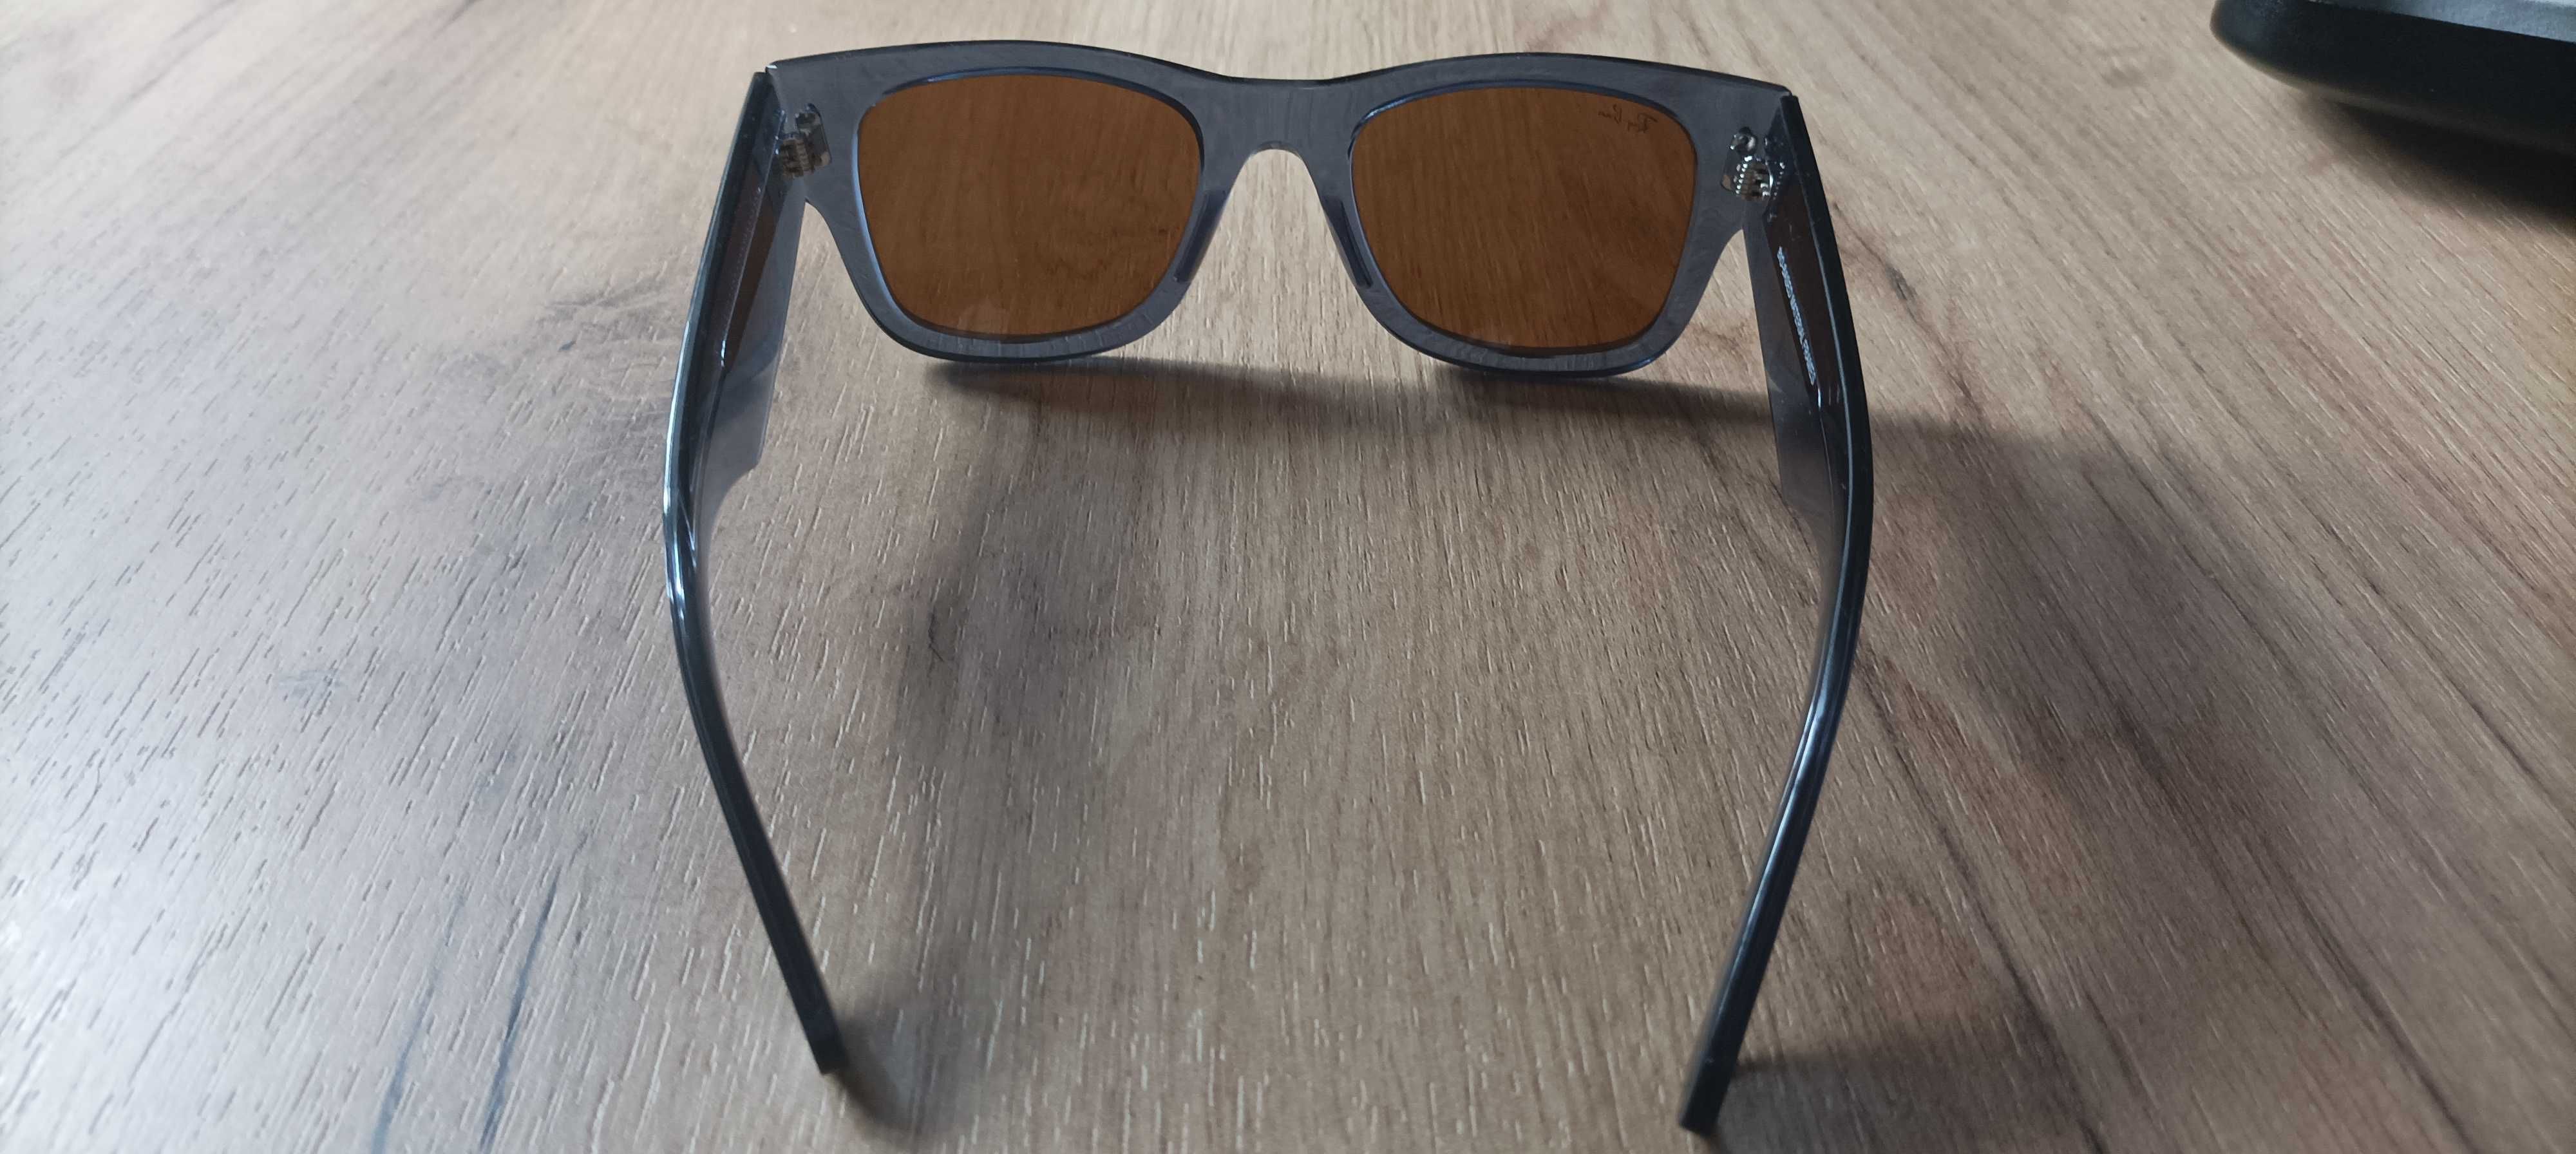 Okulary Rai-Ban przeciwsłoneczne, nowe powystawowe, etui